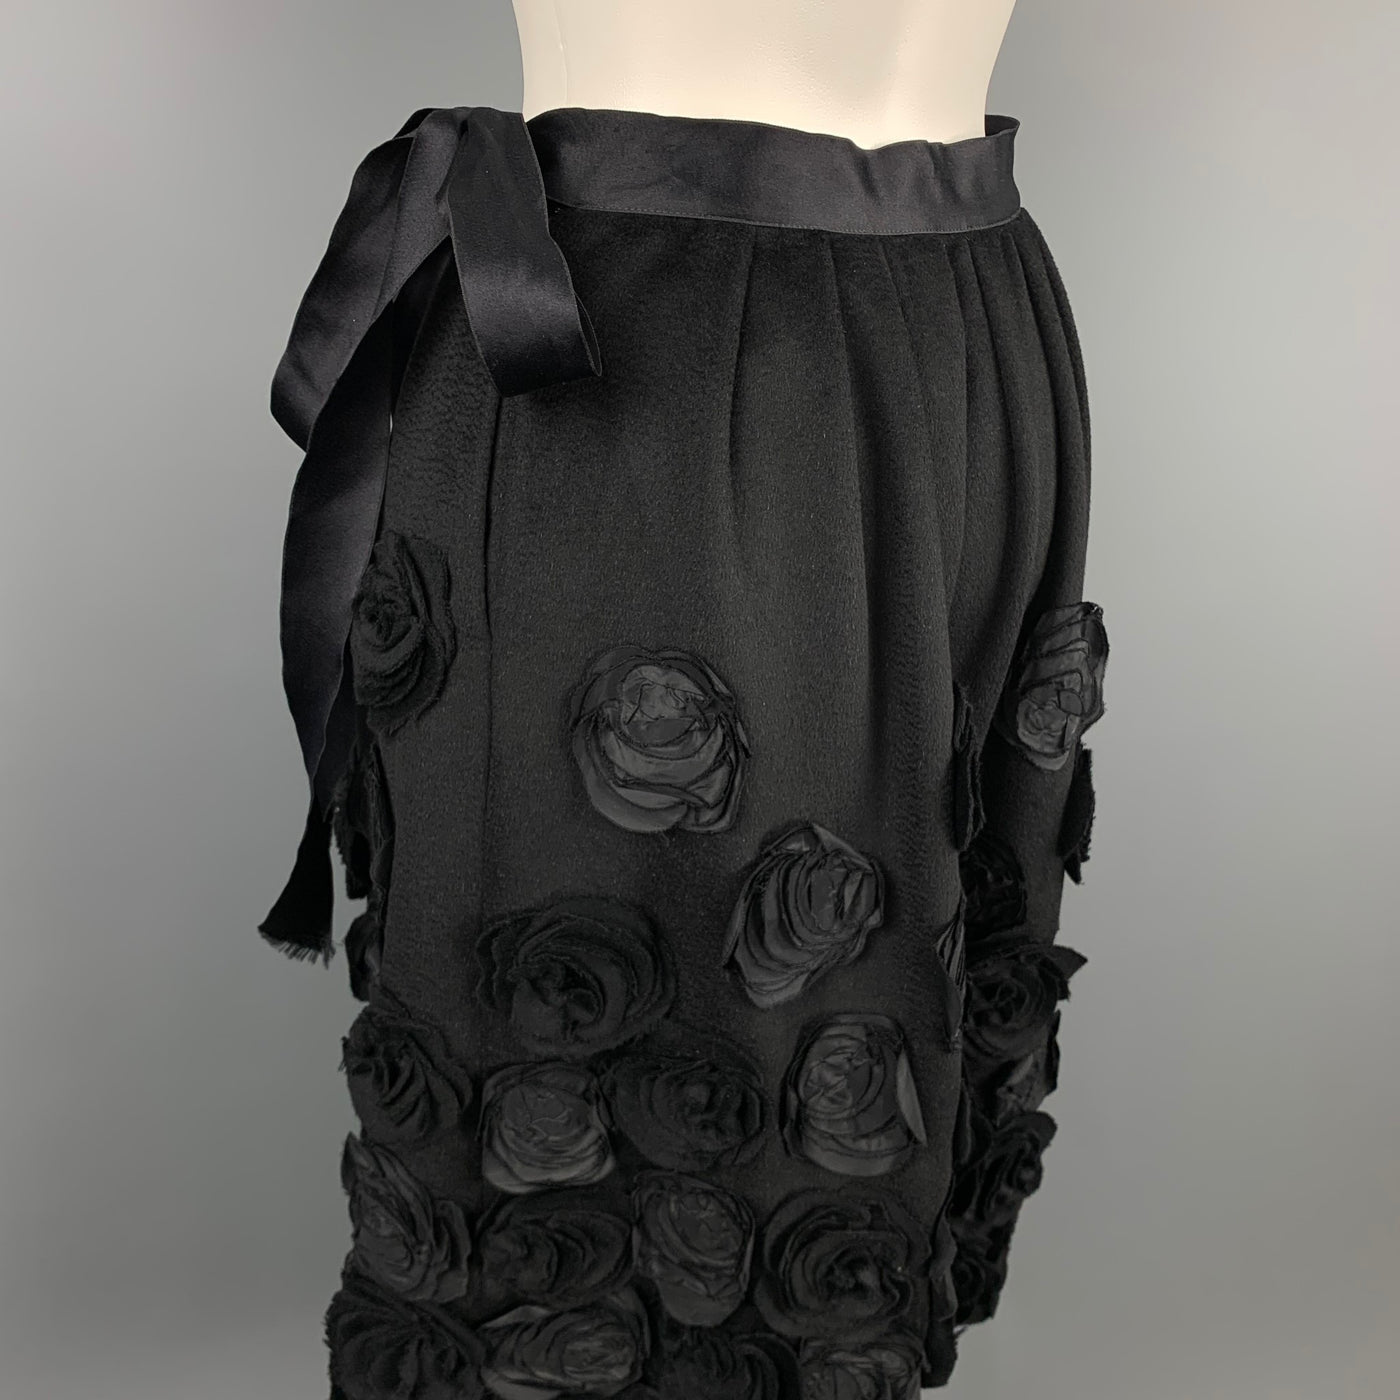 OSCAR DE LA RENTA F/W 2006 Size 6 Black Wool & Angora Floral Embellished Belted Skirt